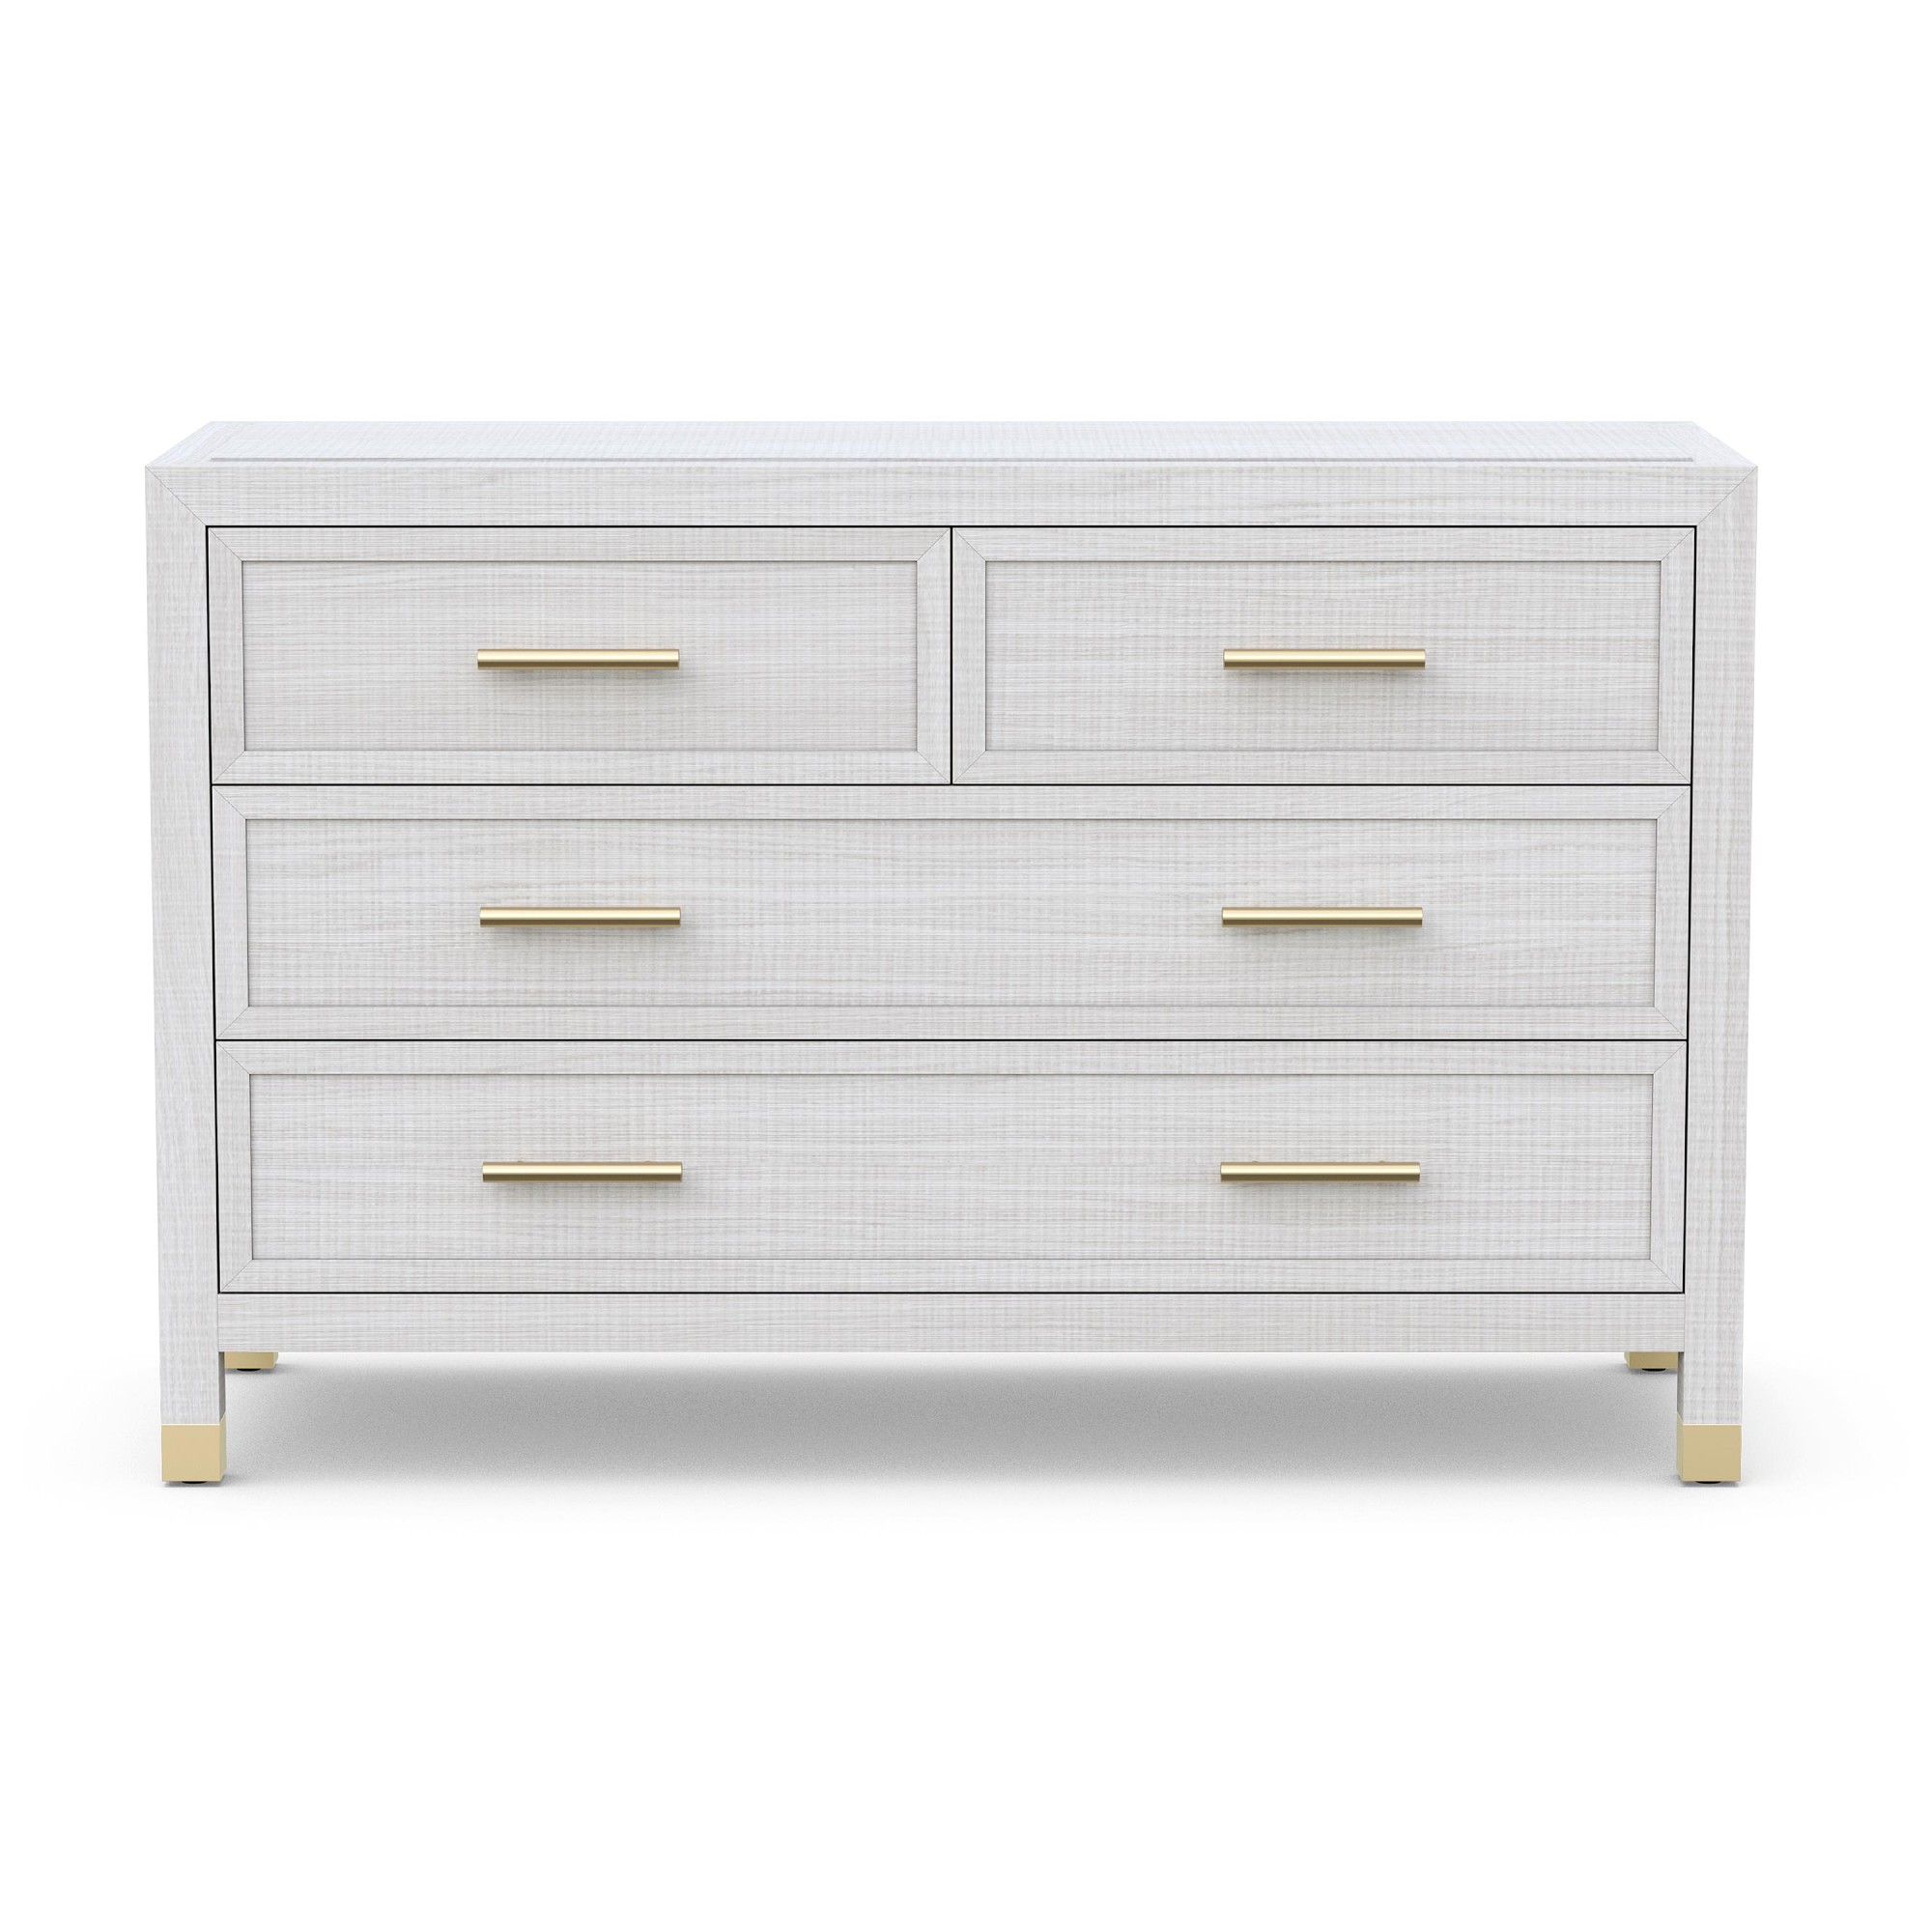 Majorca -Drawer Dresser